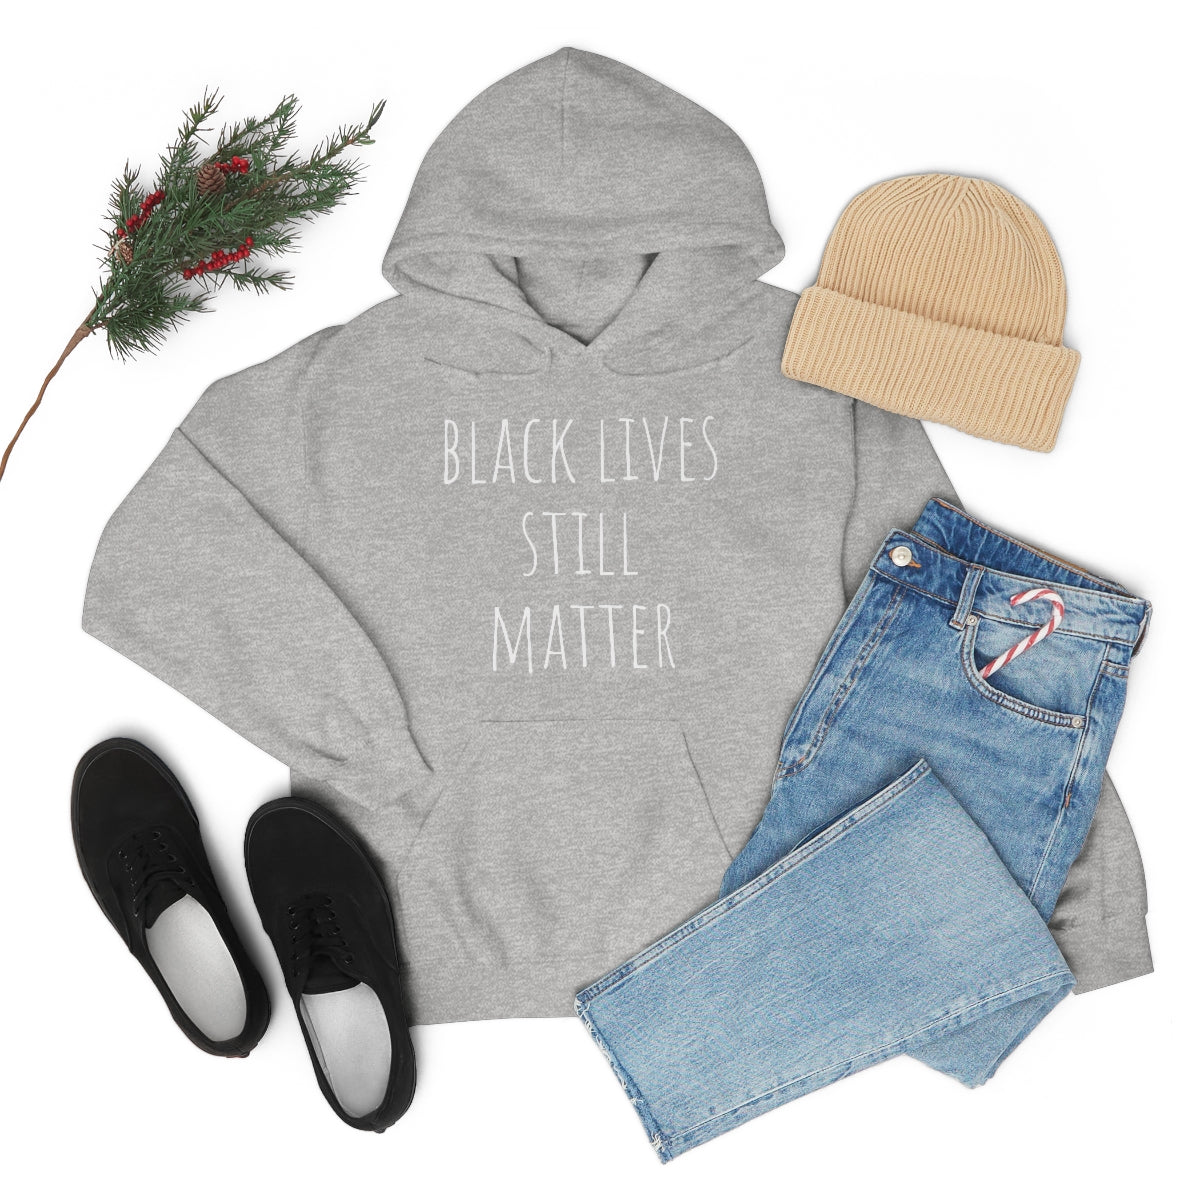 Black Lives STILL Matter Hooded Sweatshirt